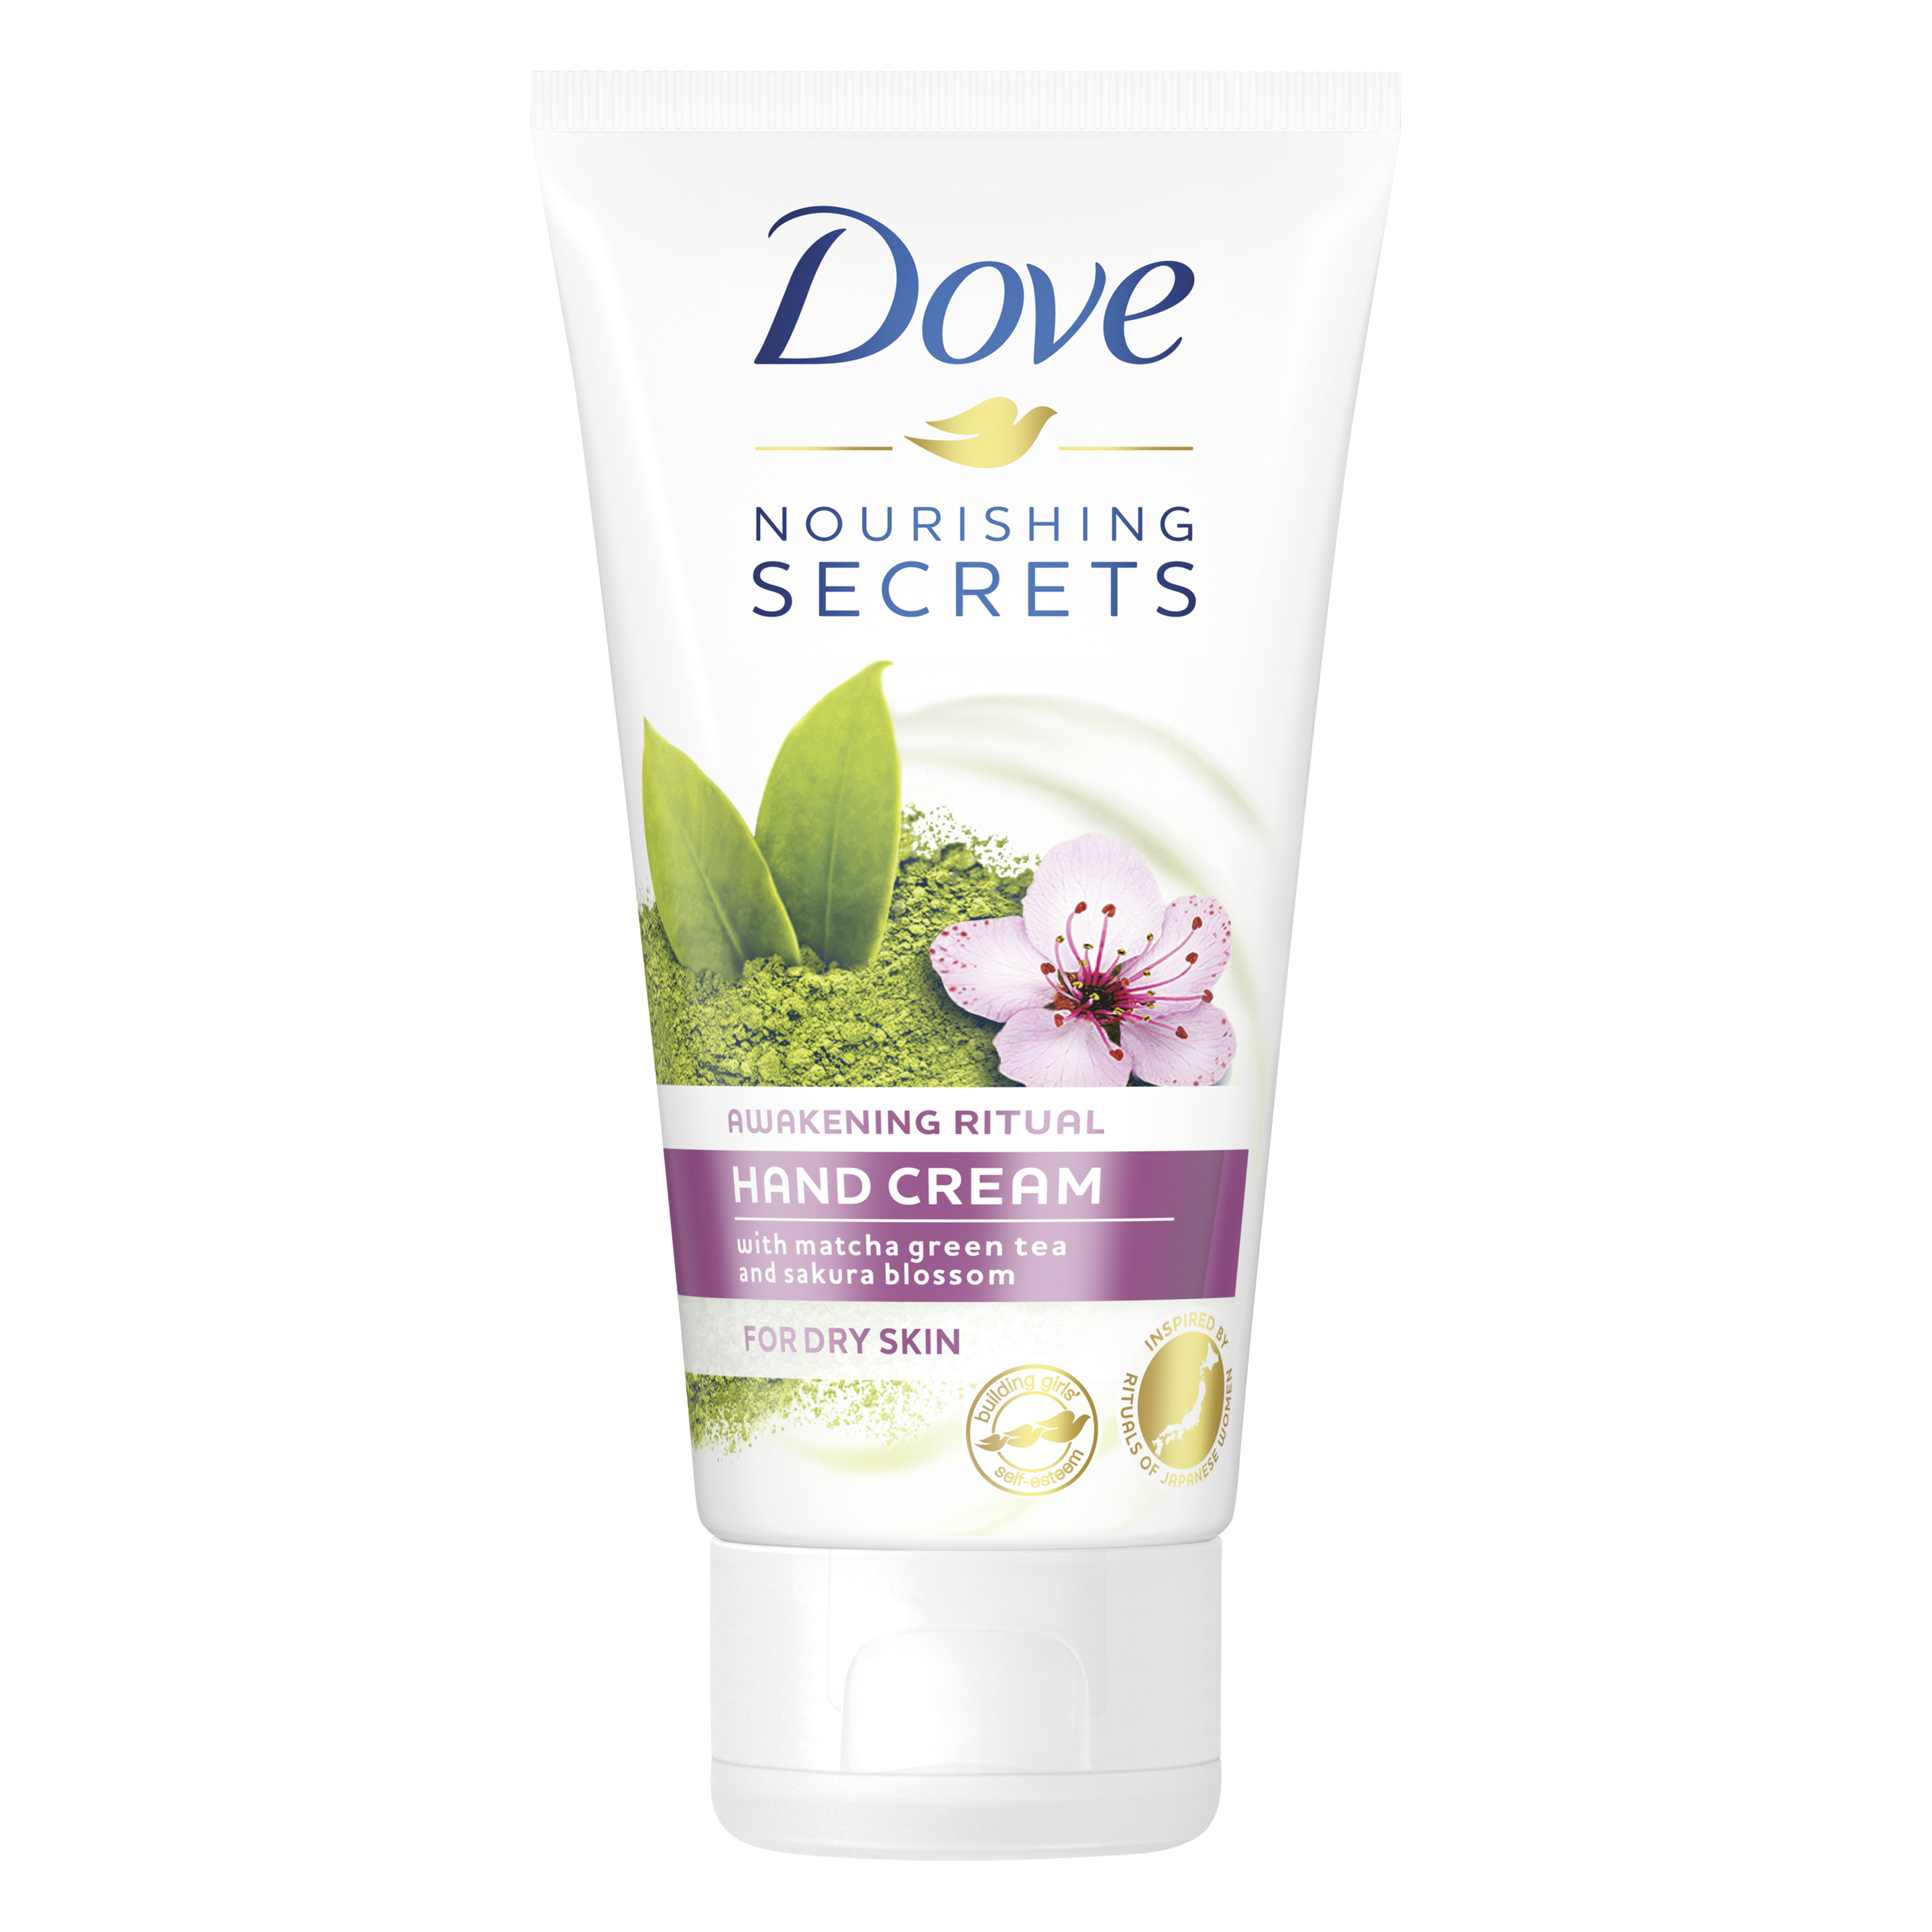 Dove Nourishing Secrets Awakening Ritual Hand Cream 75ml